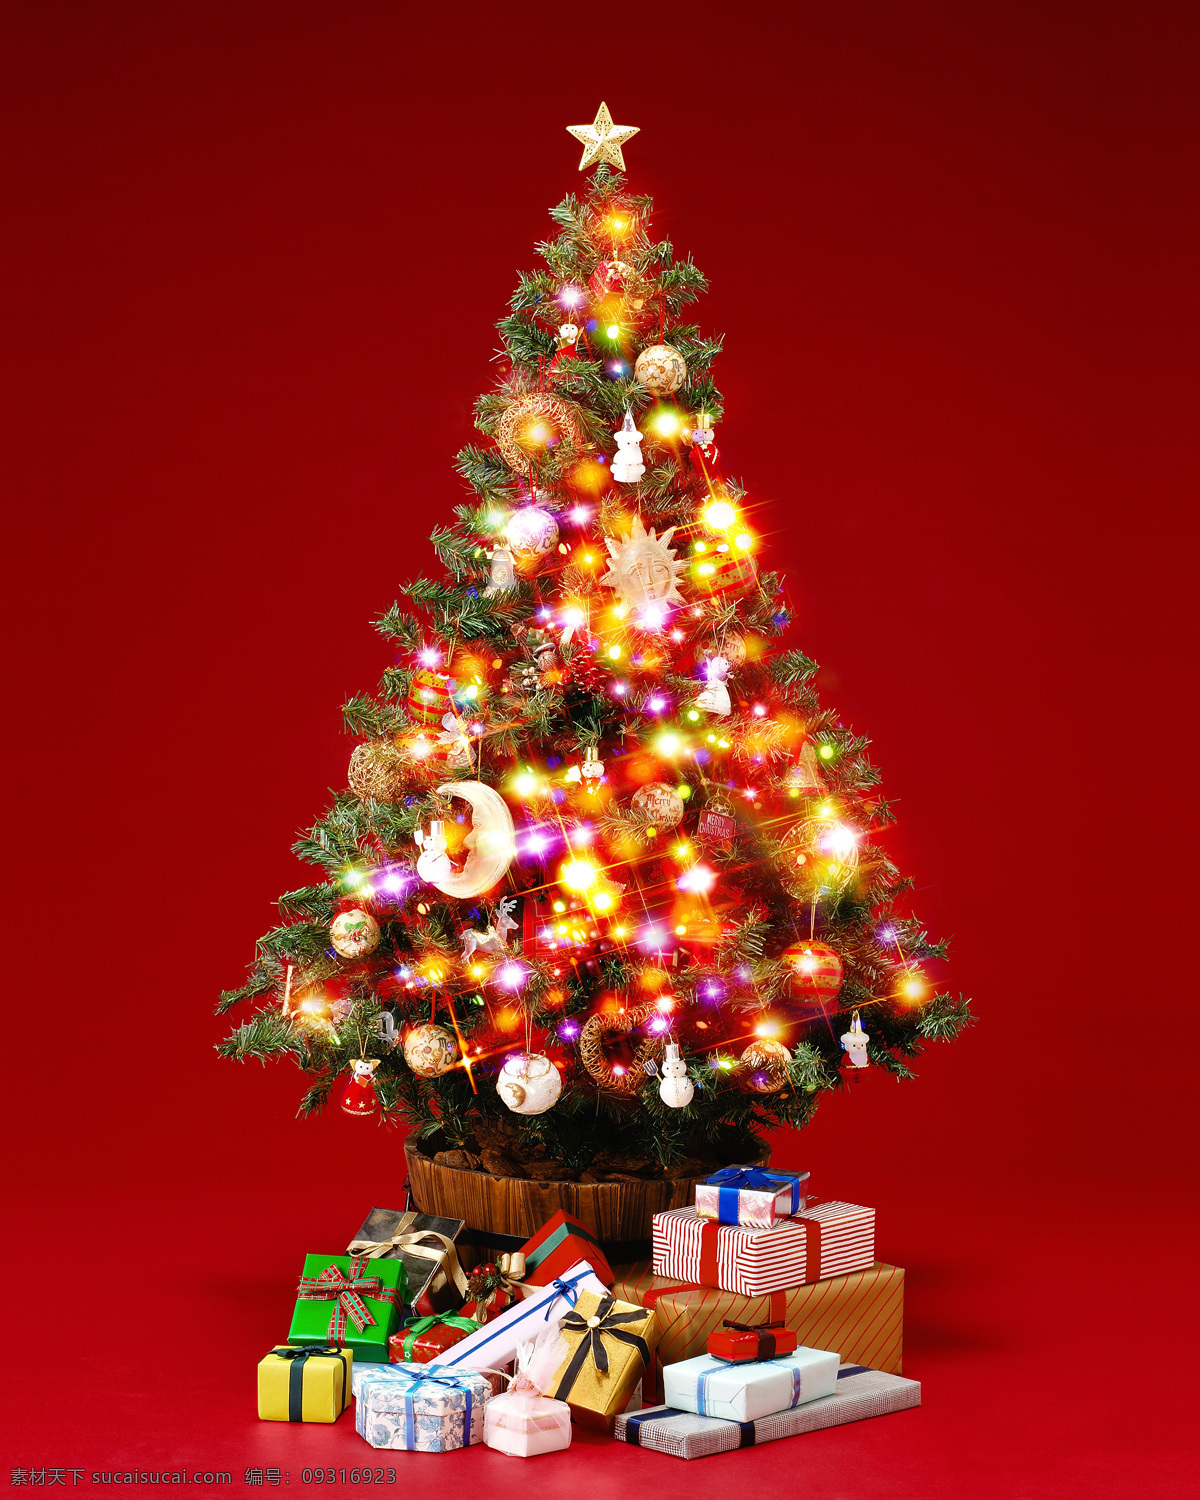 发光 圣诞树 圣诞礼物 节日素材 圣诞节 喜庆 节日 圣诞物品 高清图片 节日庆典 生活百科